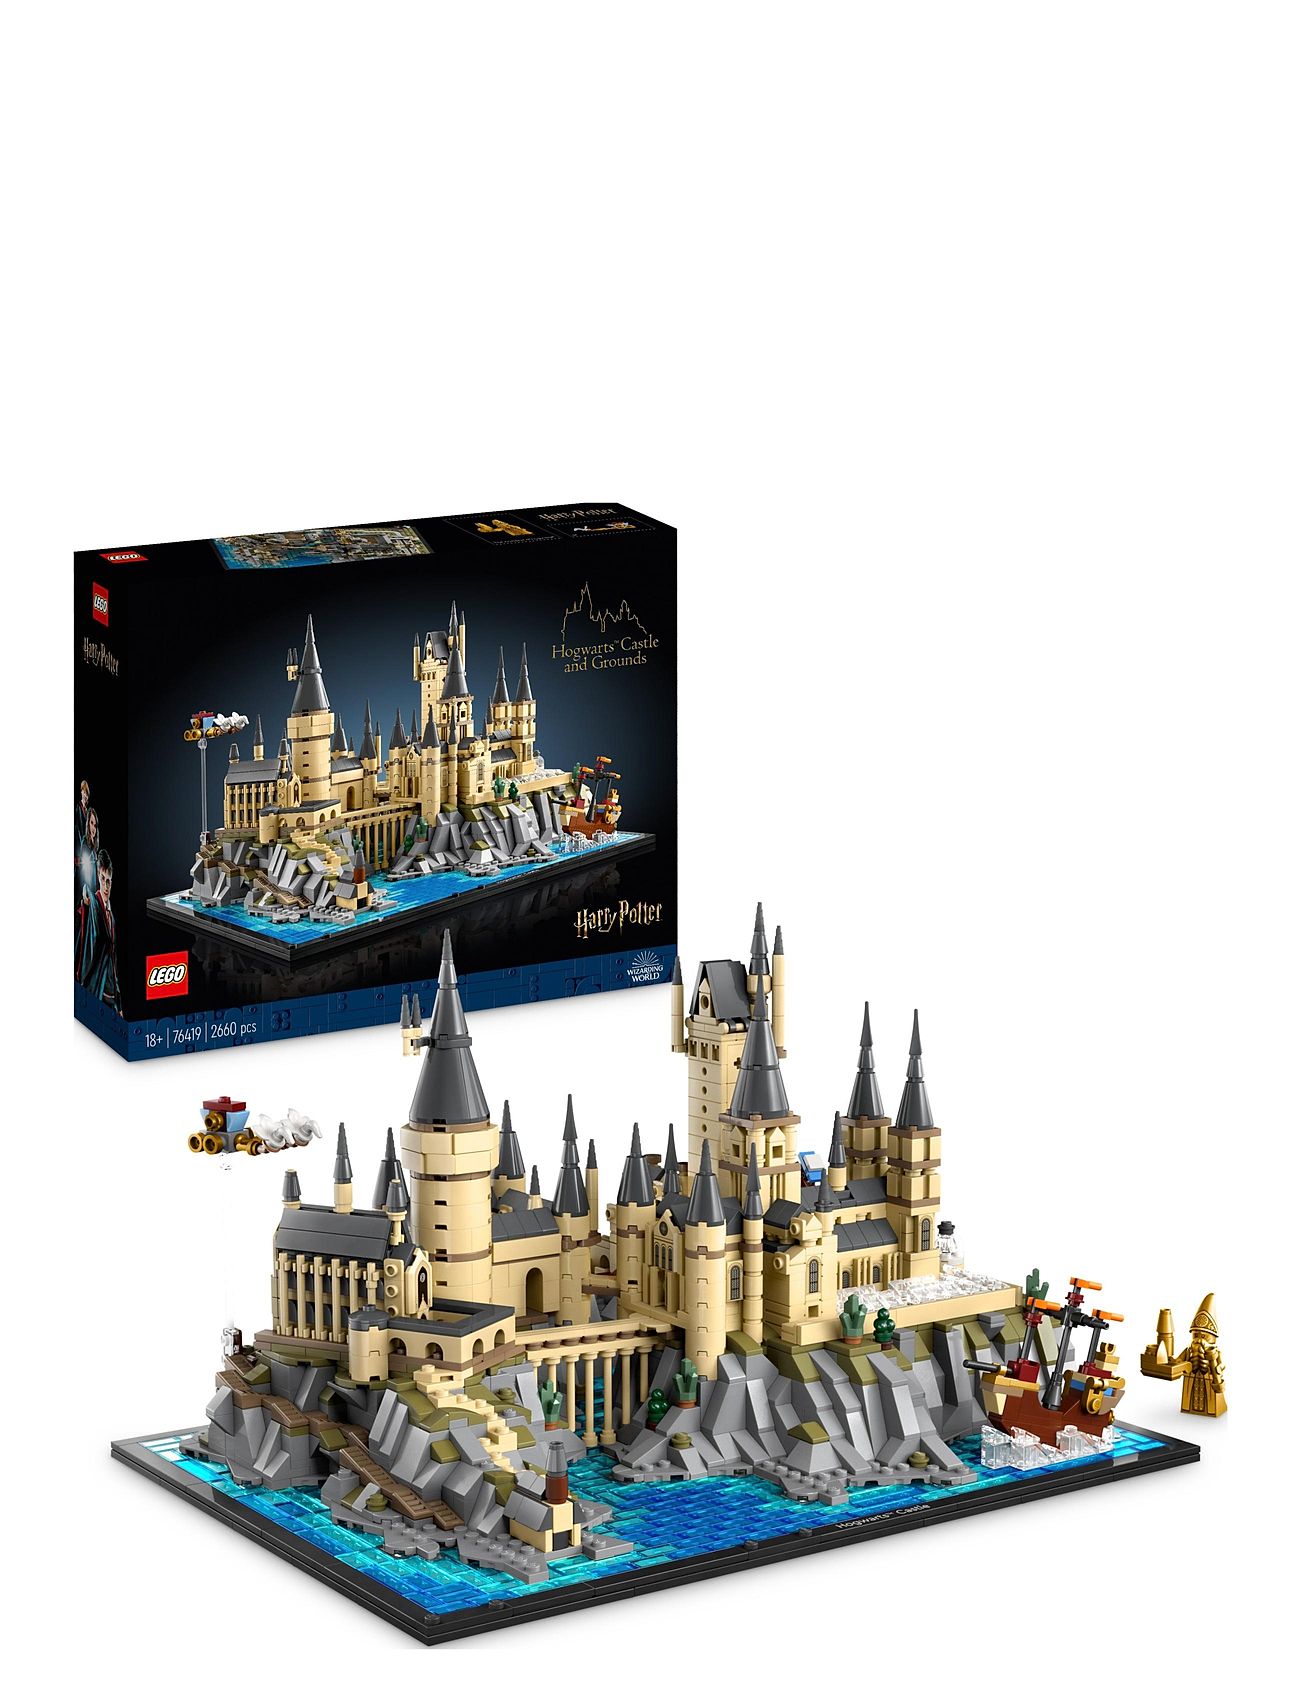 Hogwarts Castle And Grounds Big Set Toys Lego Toys Lego harry Potter Multi/patterned LEGO